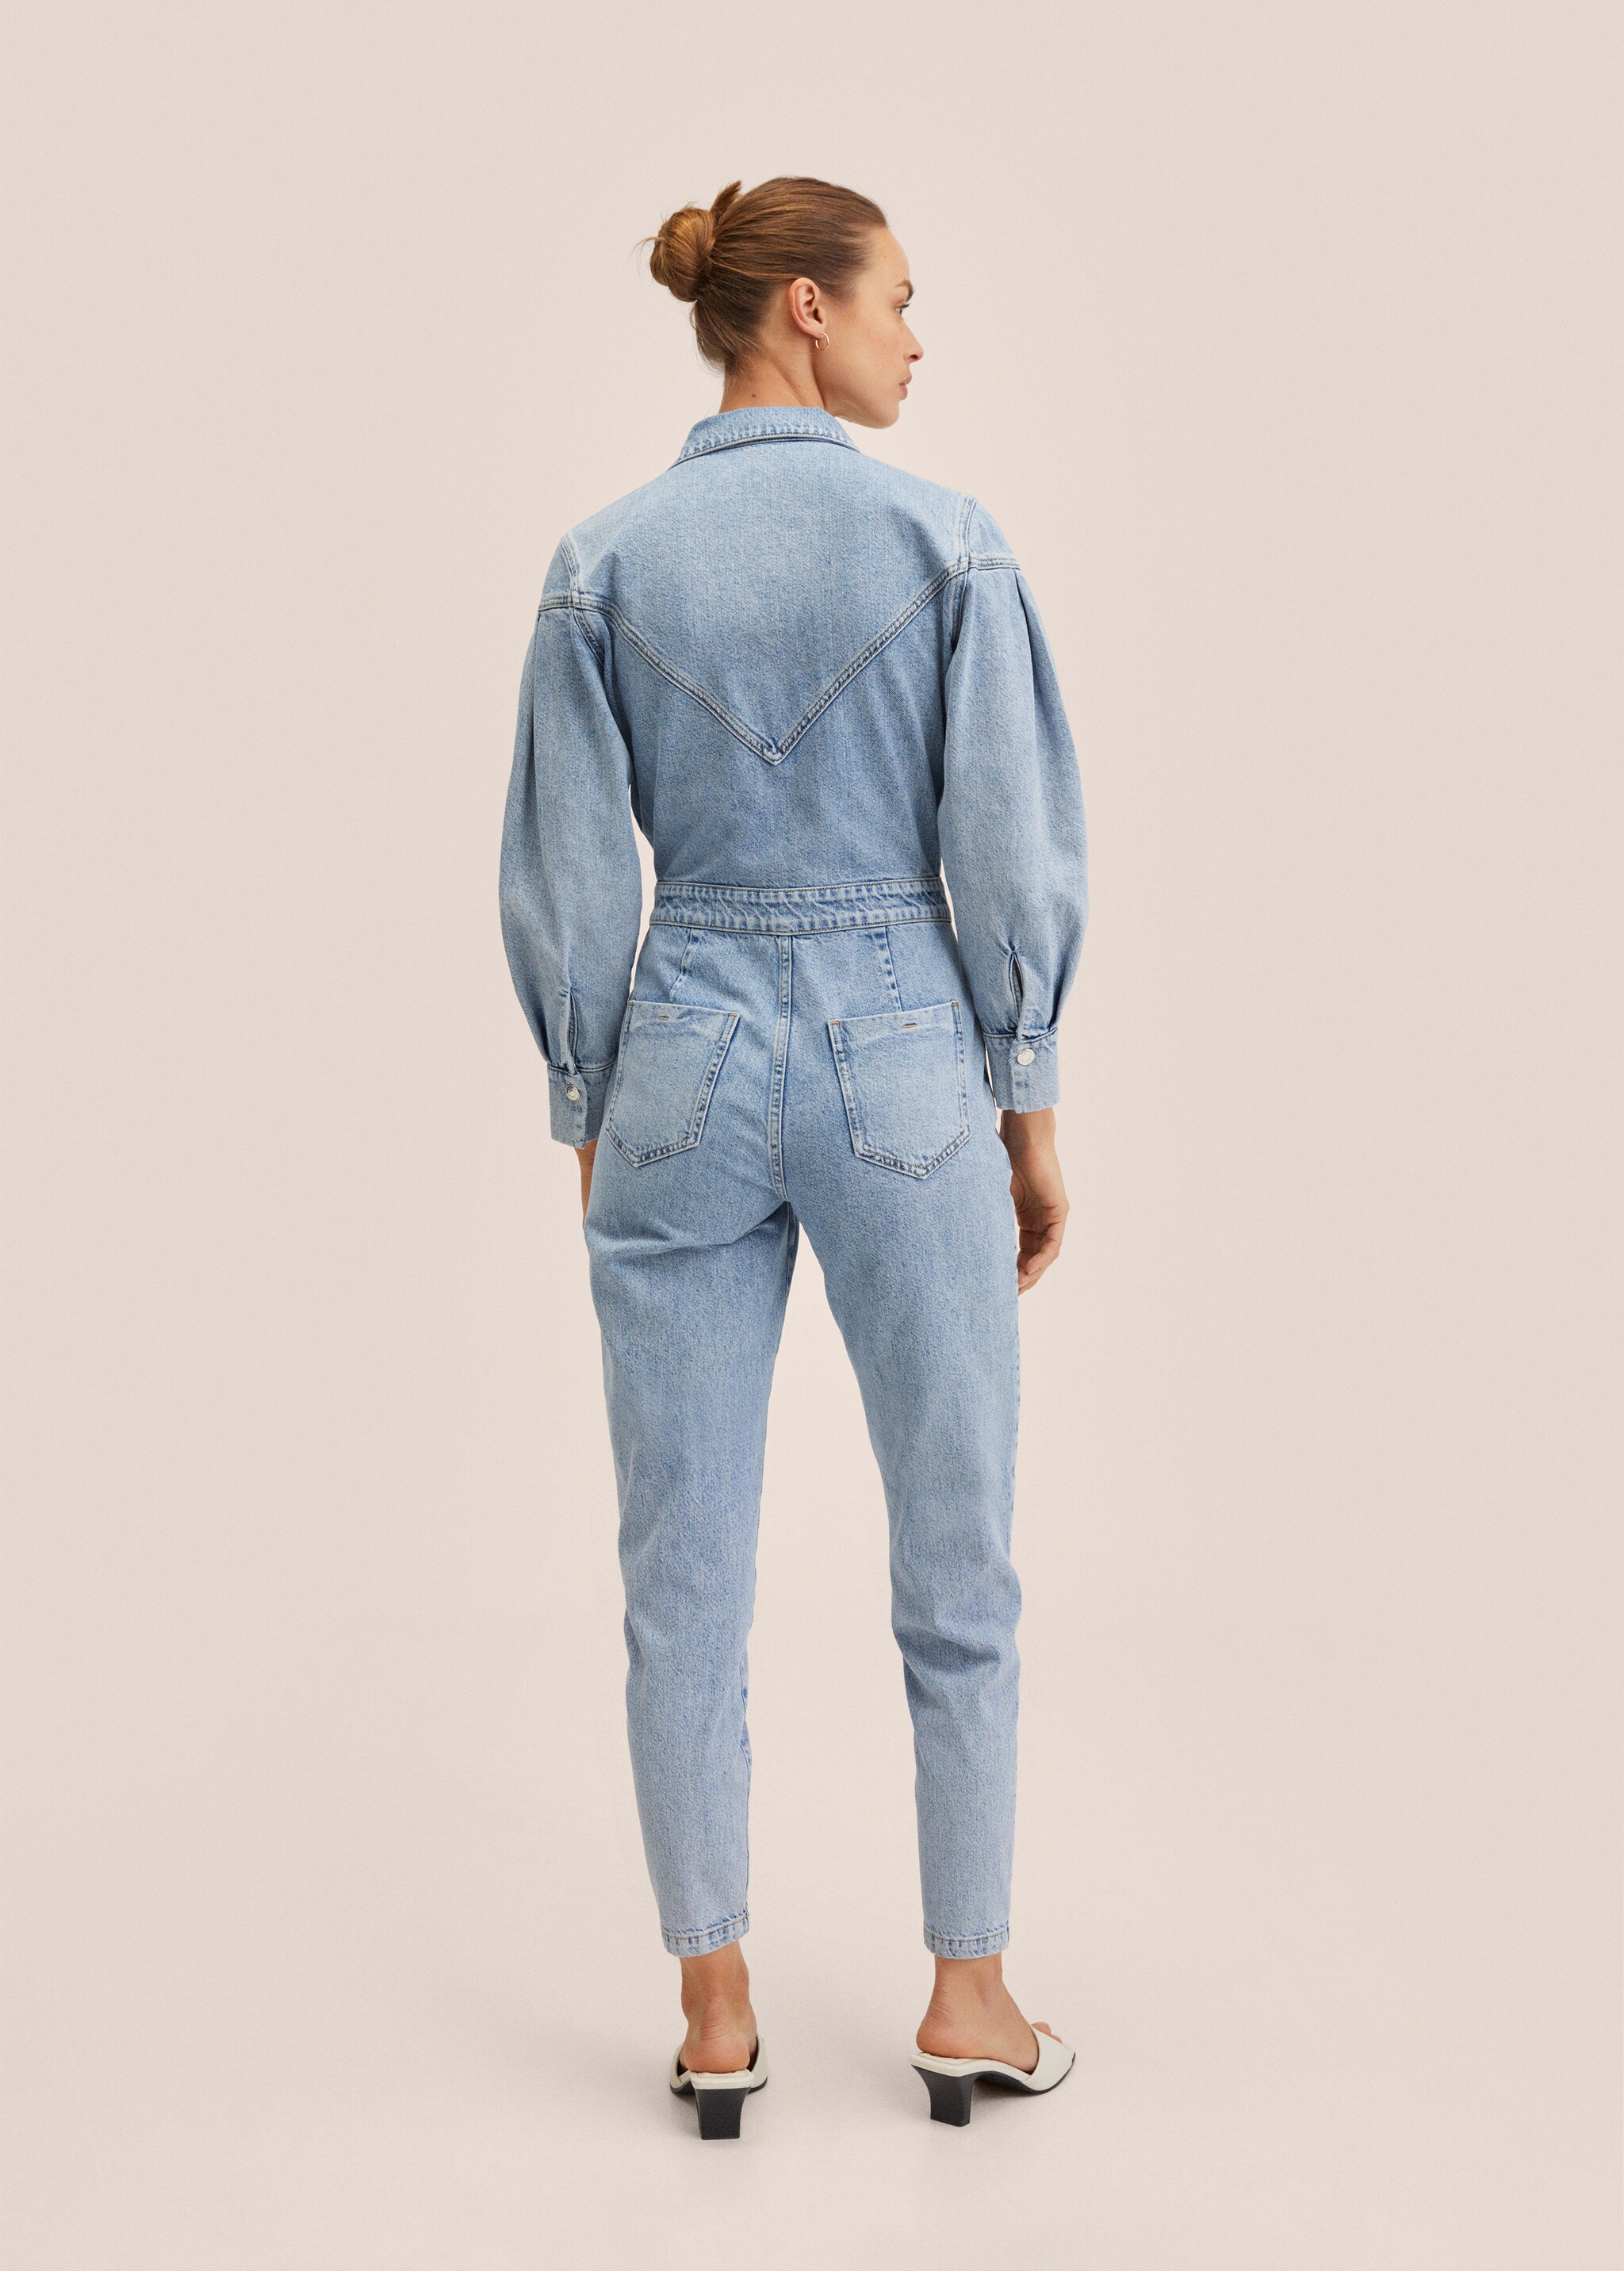 Jeans-Jumpsuit mit Reißverschluss - Rückseite des Artikels